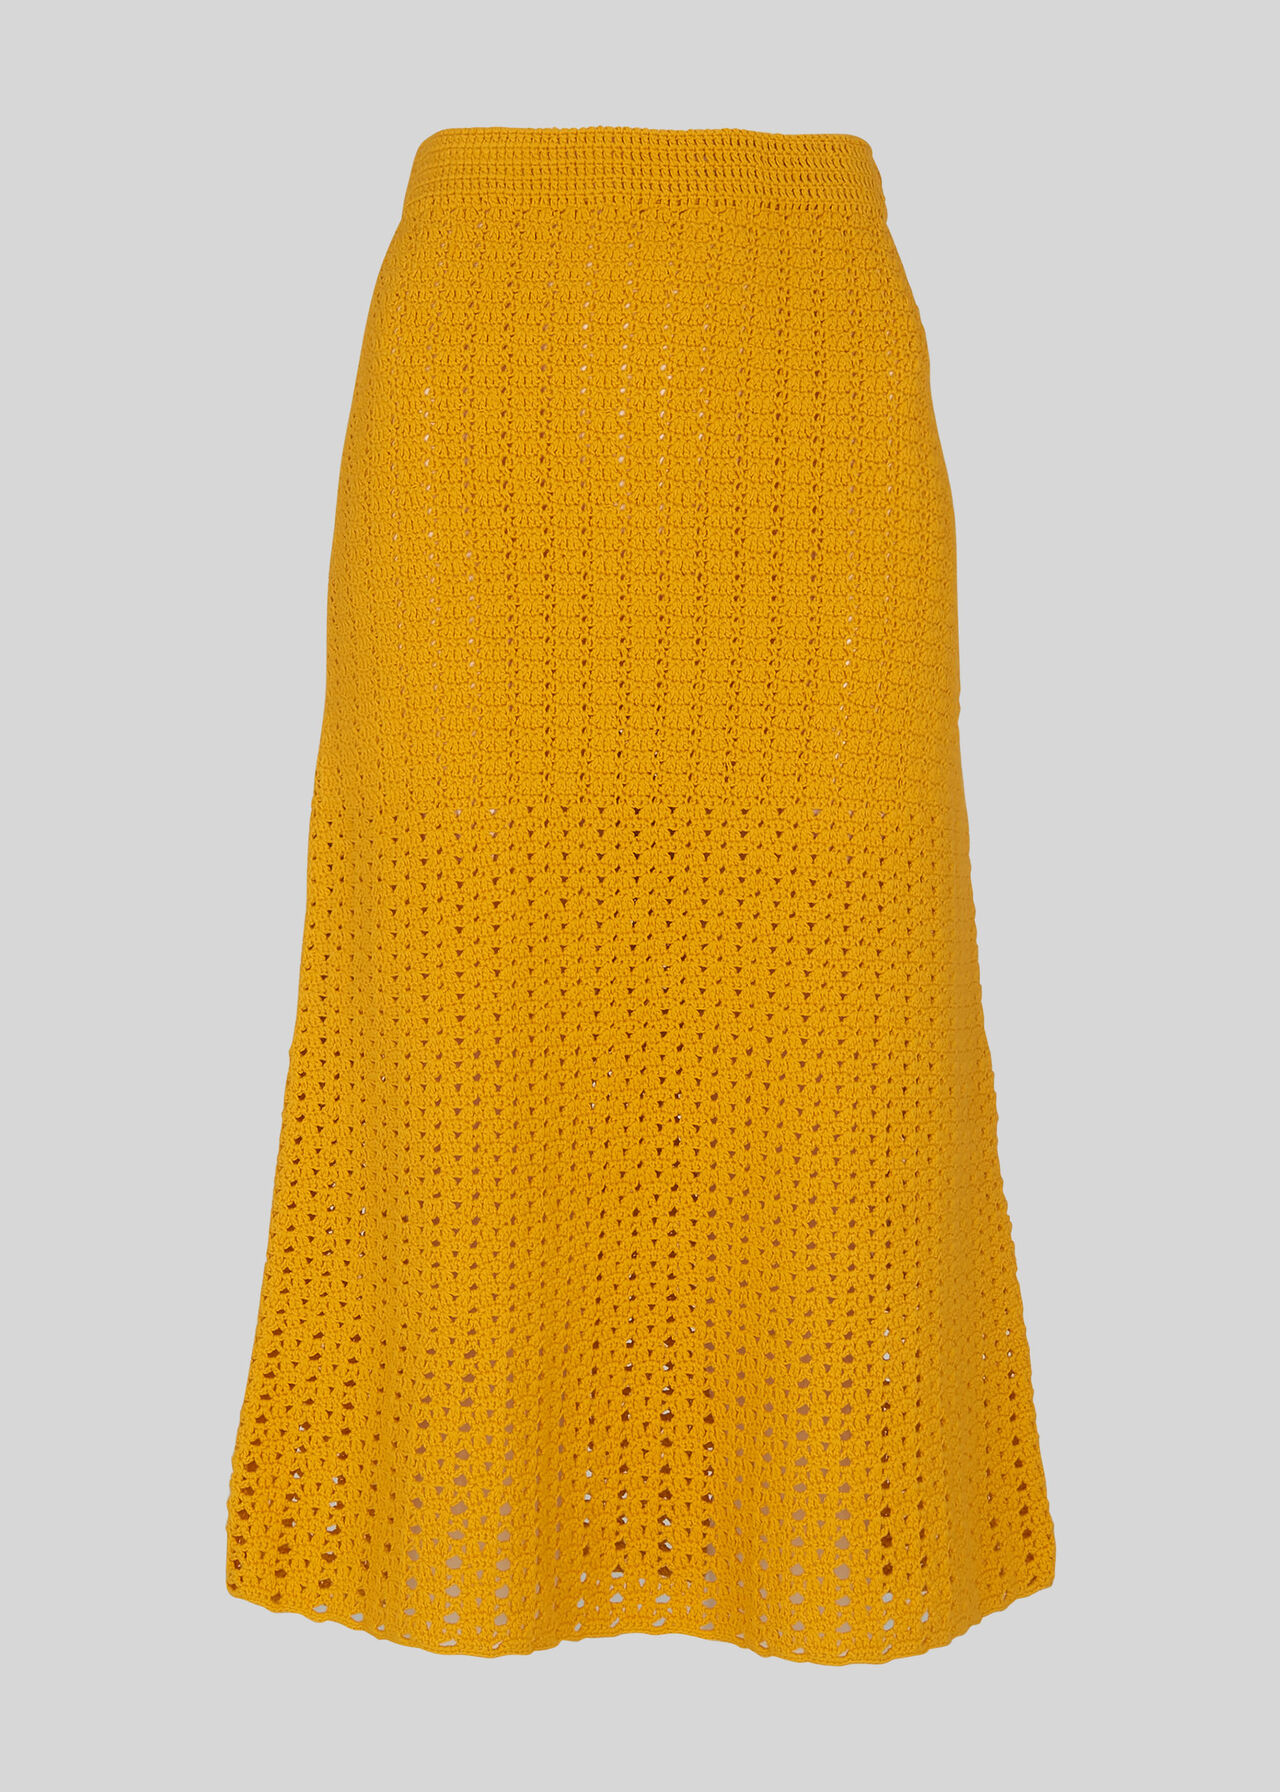 Hand Crochet Skirt Yellow